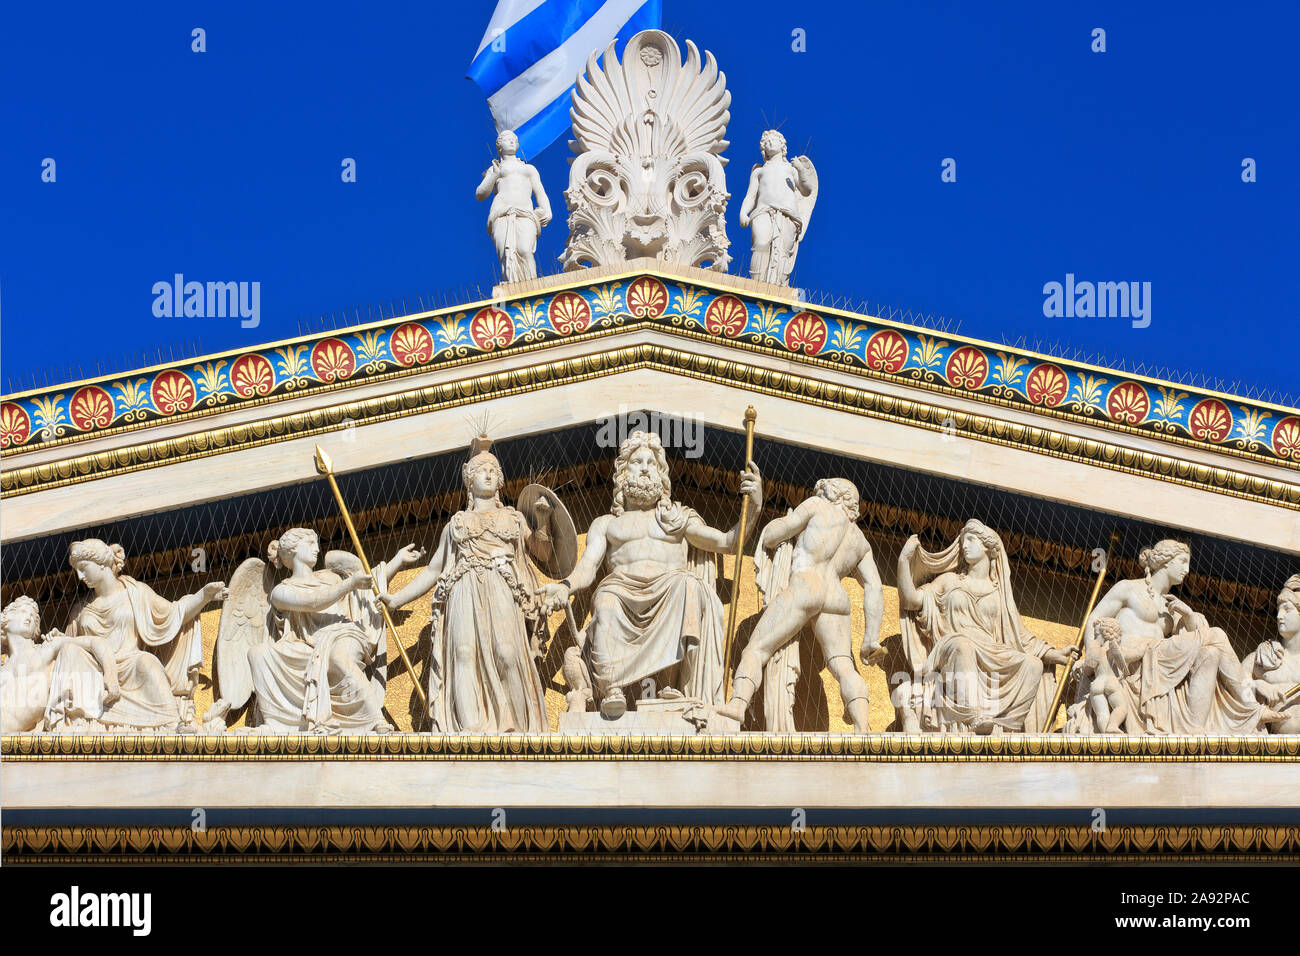 Des statues du dieu grec Zeus assis sur un trône flanqué de Pallas Athéna, Apollon et Hera sur le pignon de l'Académie d'Athènes, Grèce Banque D'Images